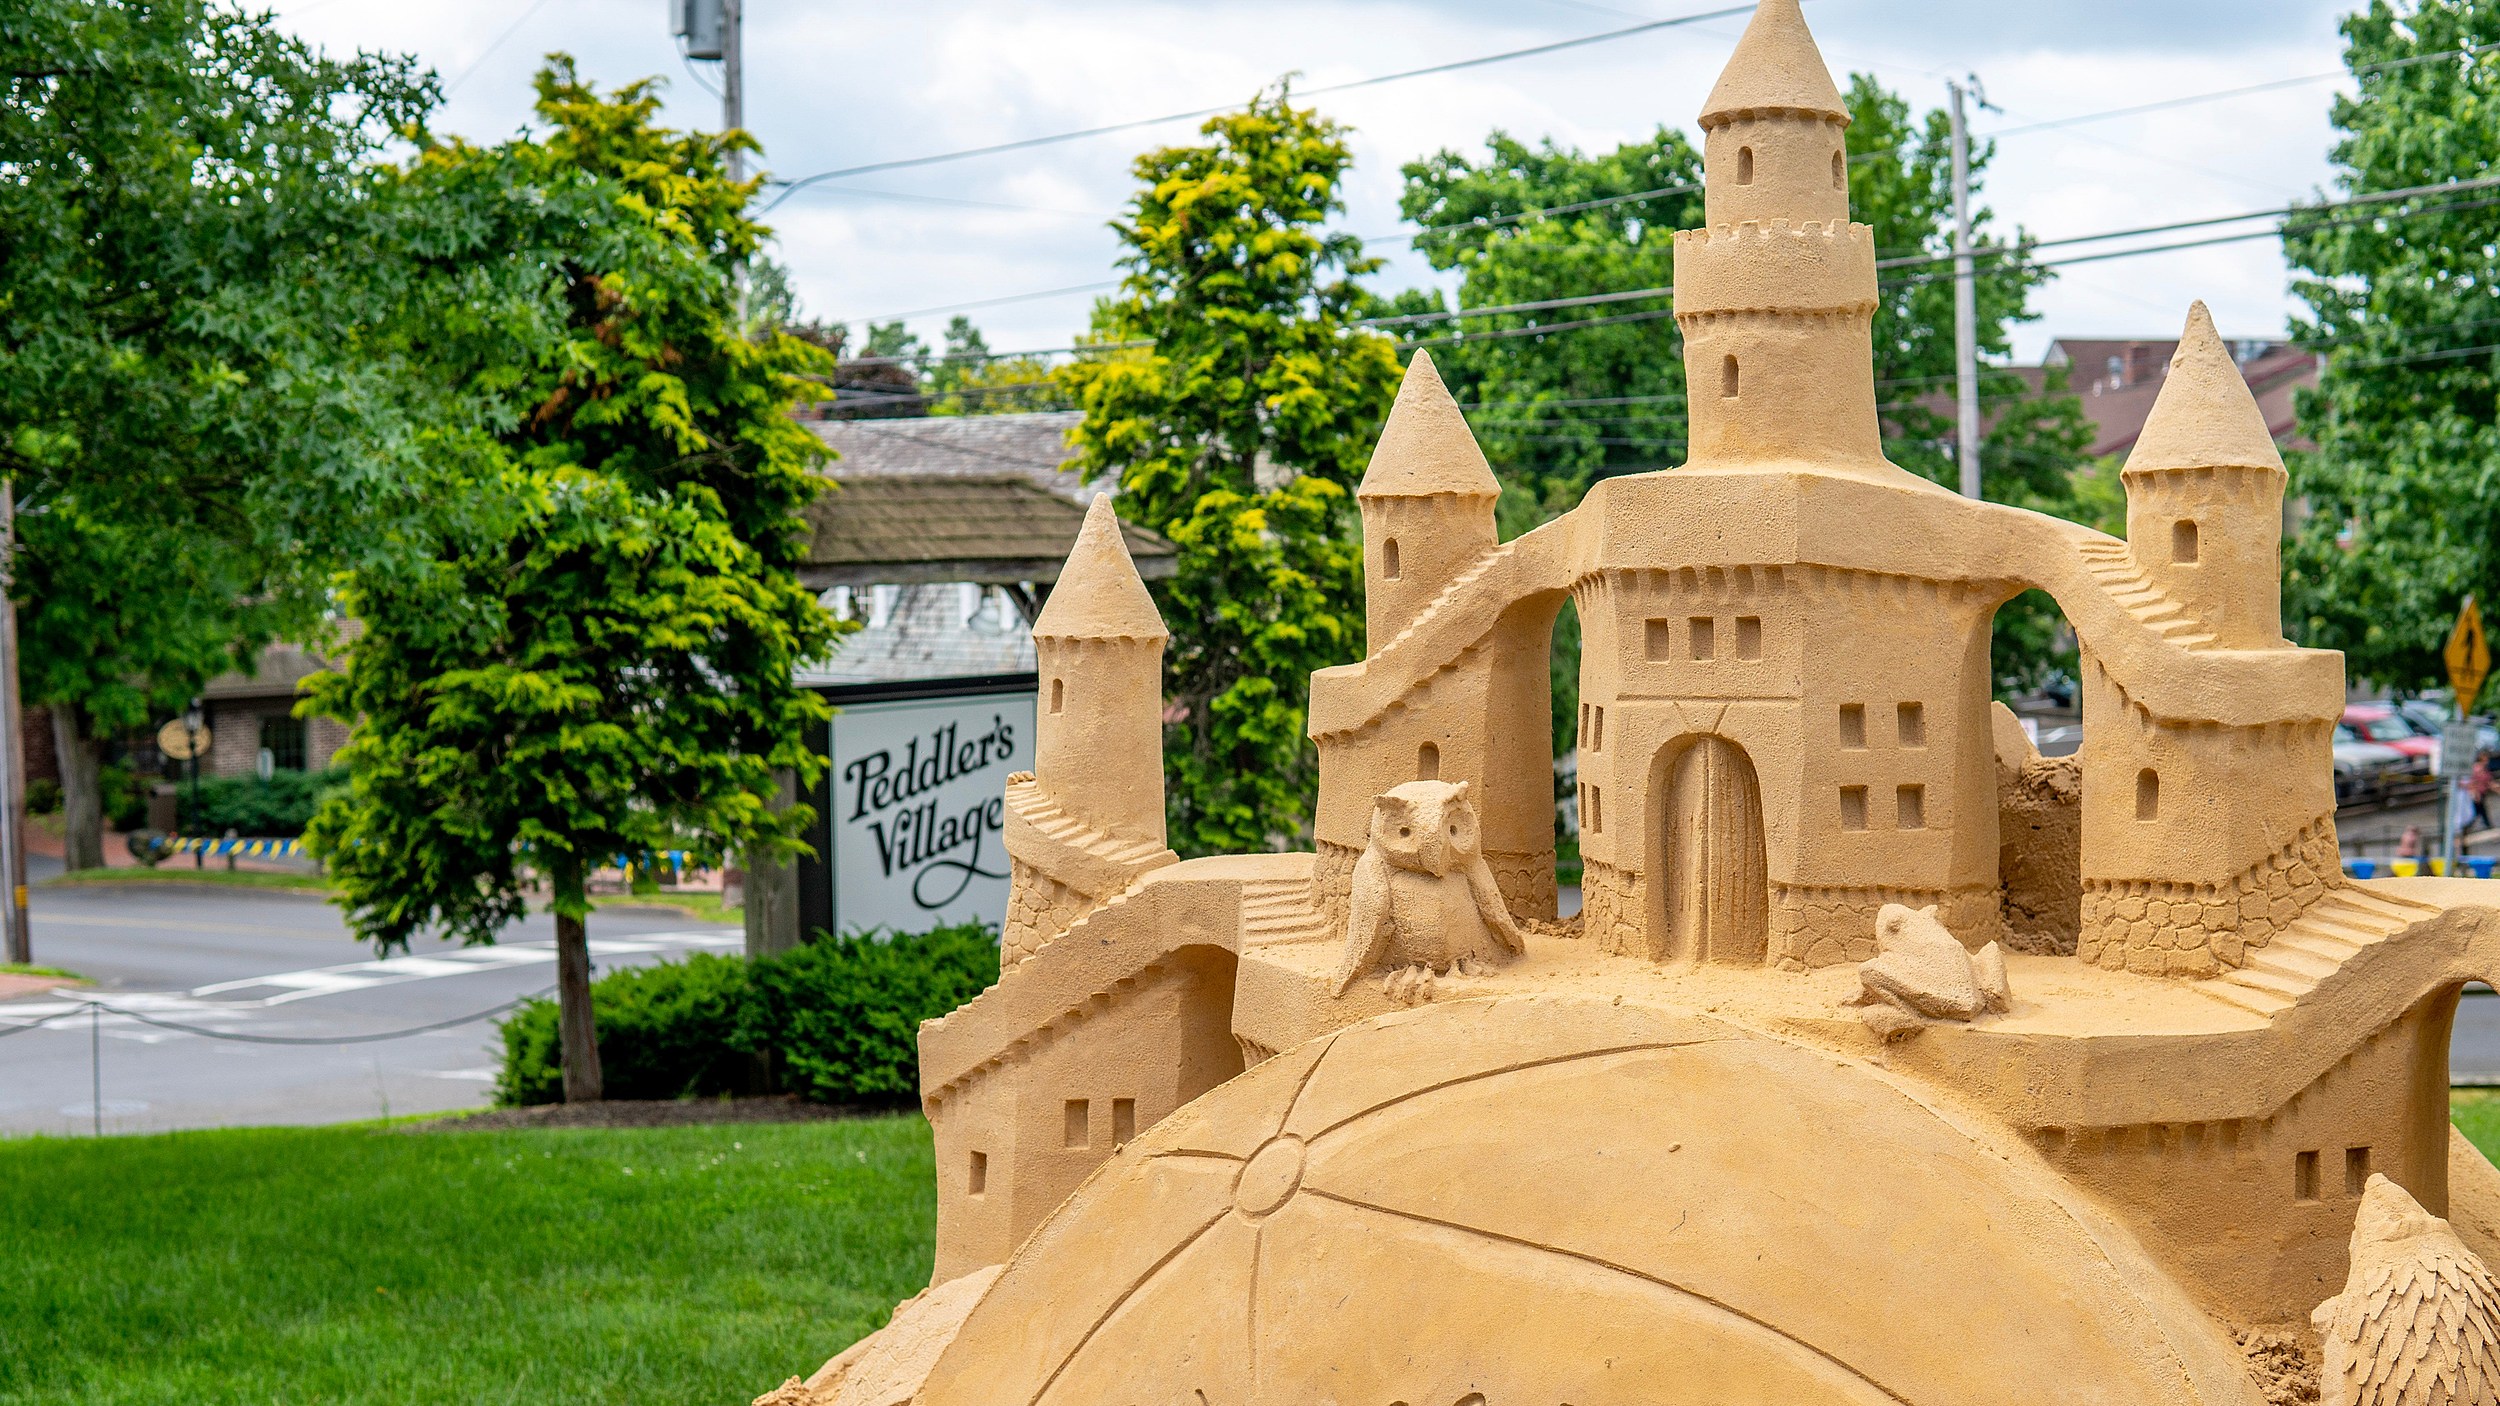 Peddler's Village to display large sand sculptures